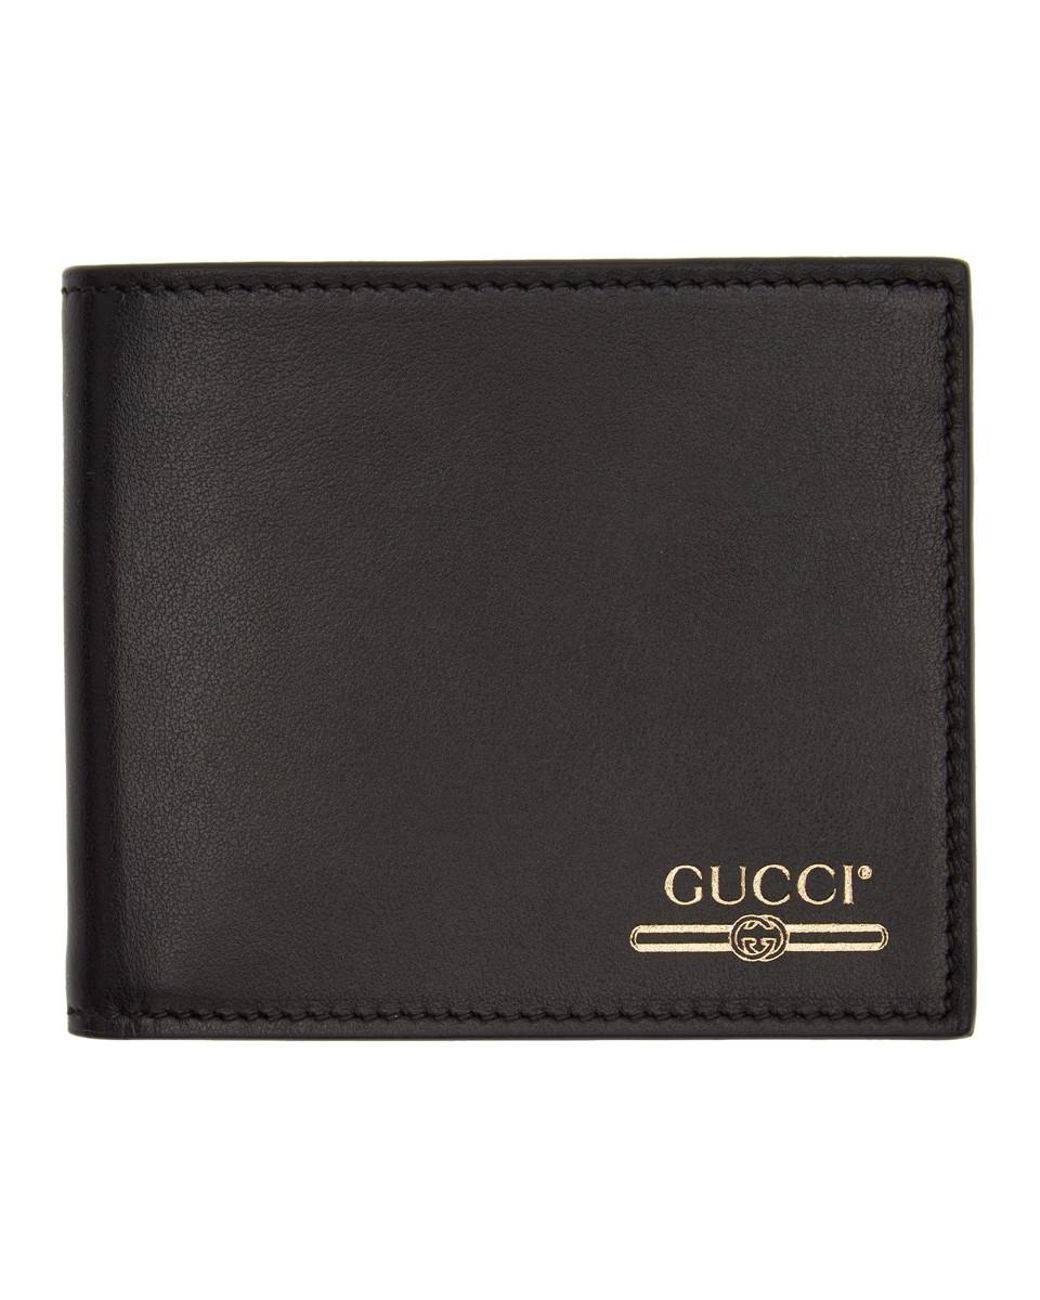 gucci wallet ssense